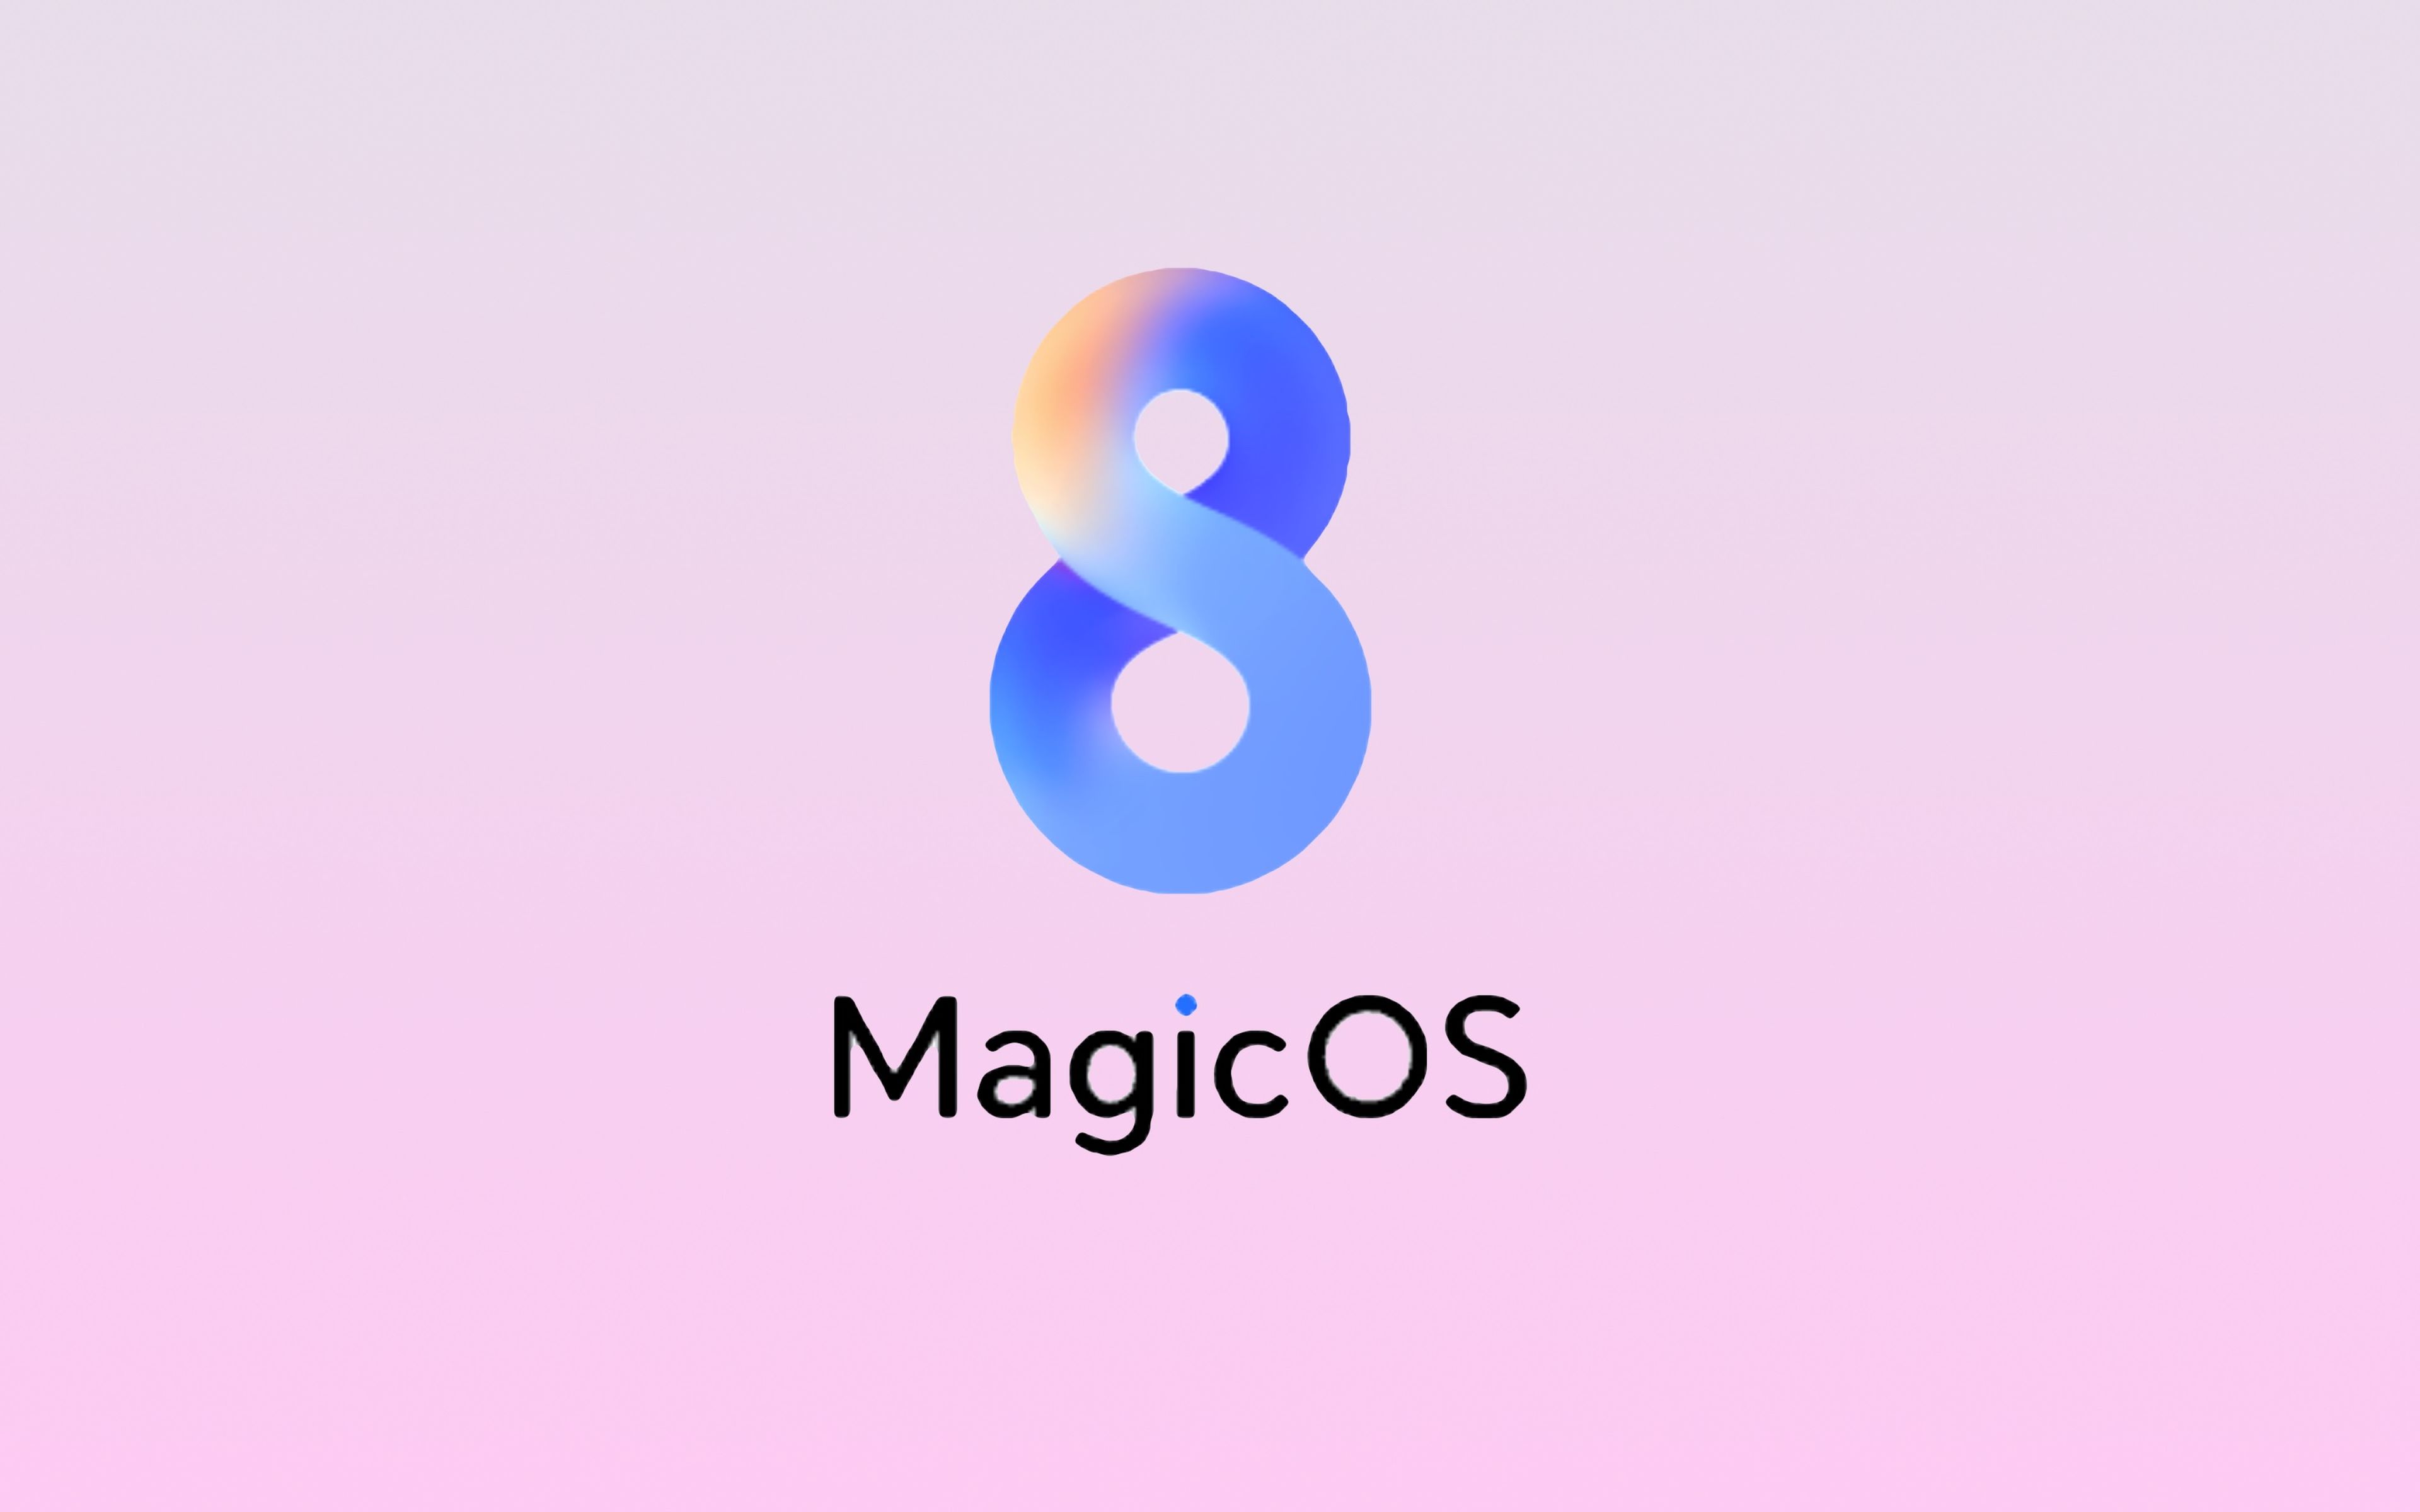 Honor Magic OS 8.0